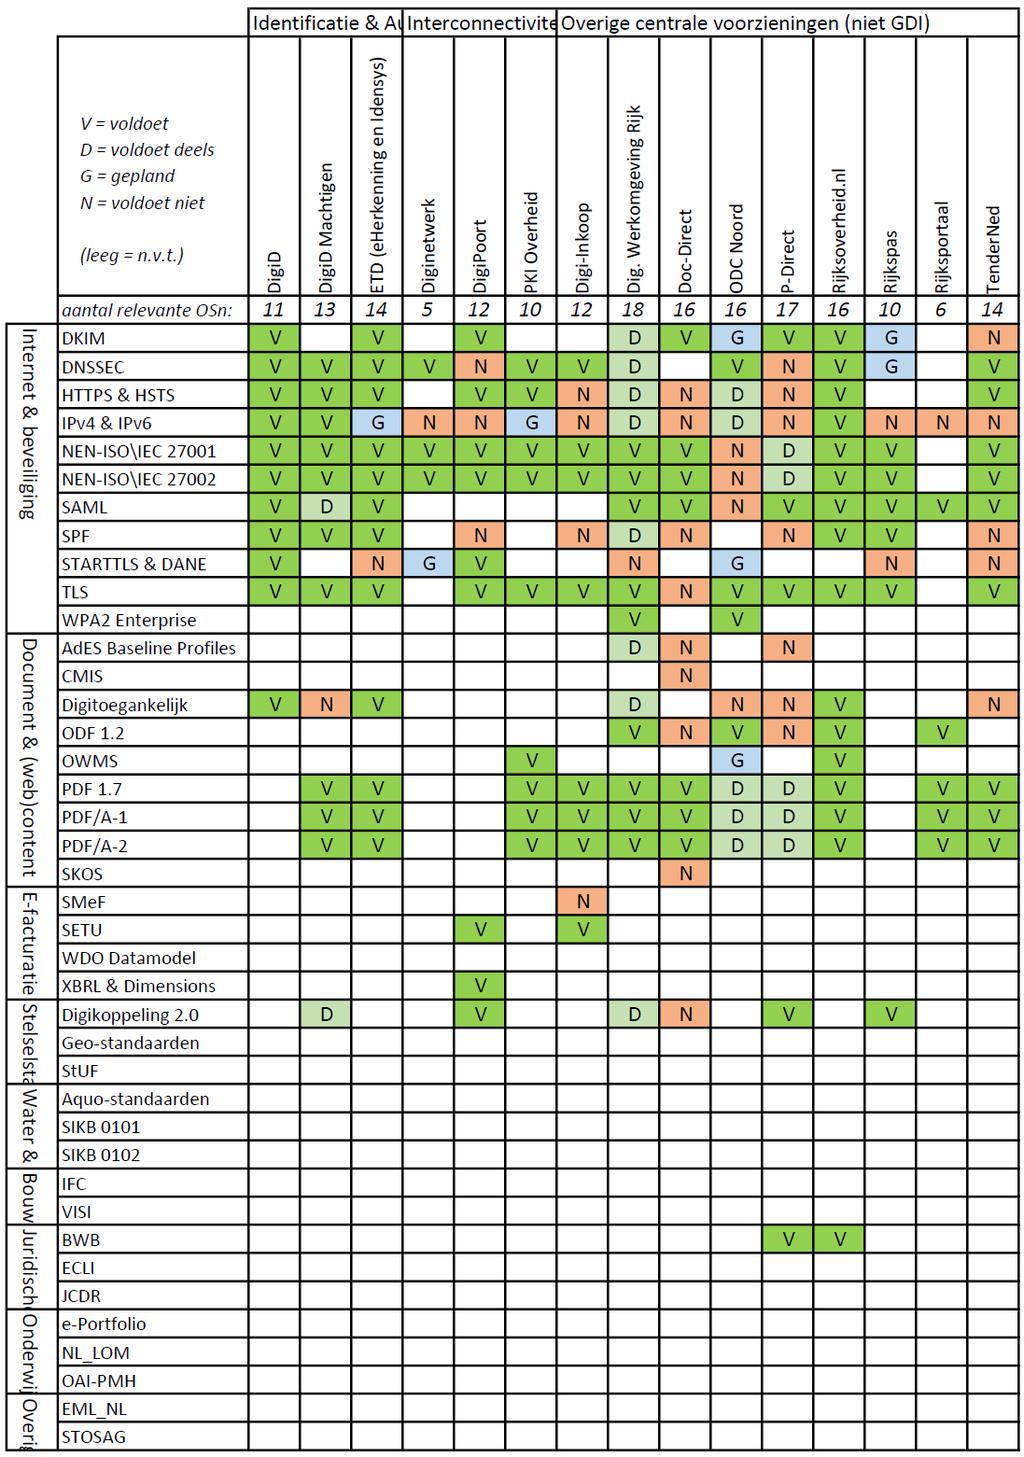 Tabel 9b: Toepassing open standaarden in 35 voorzieningen